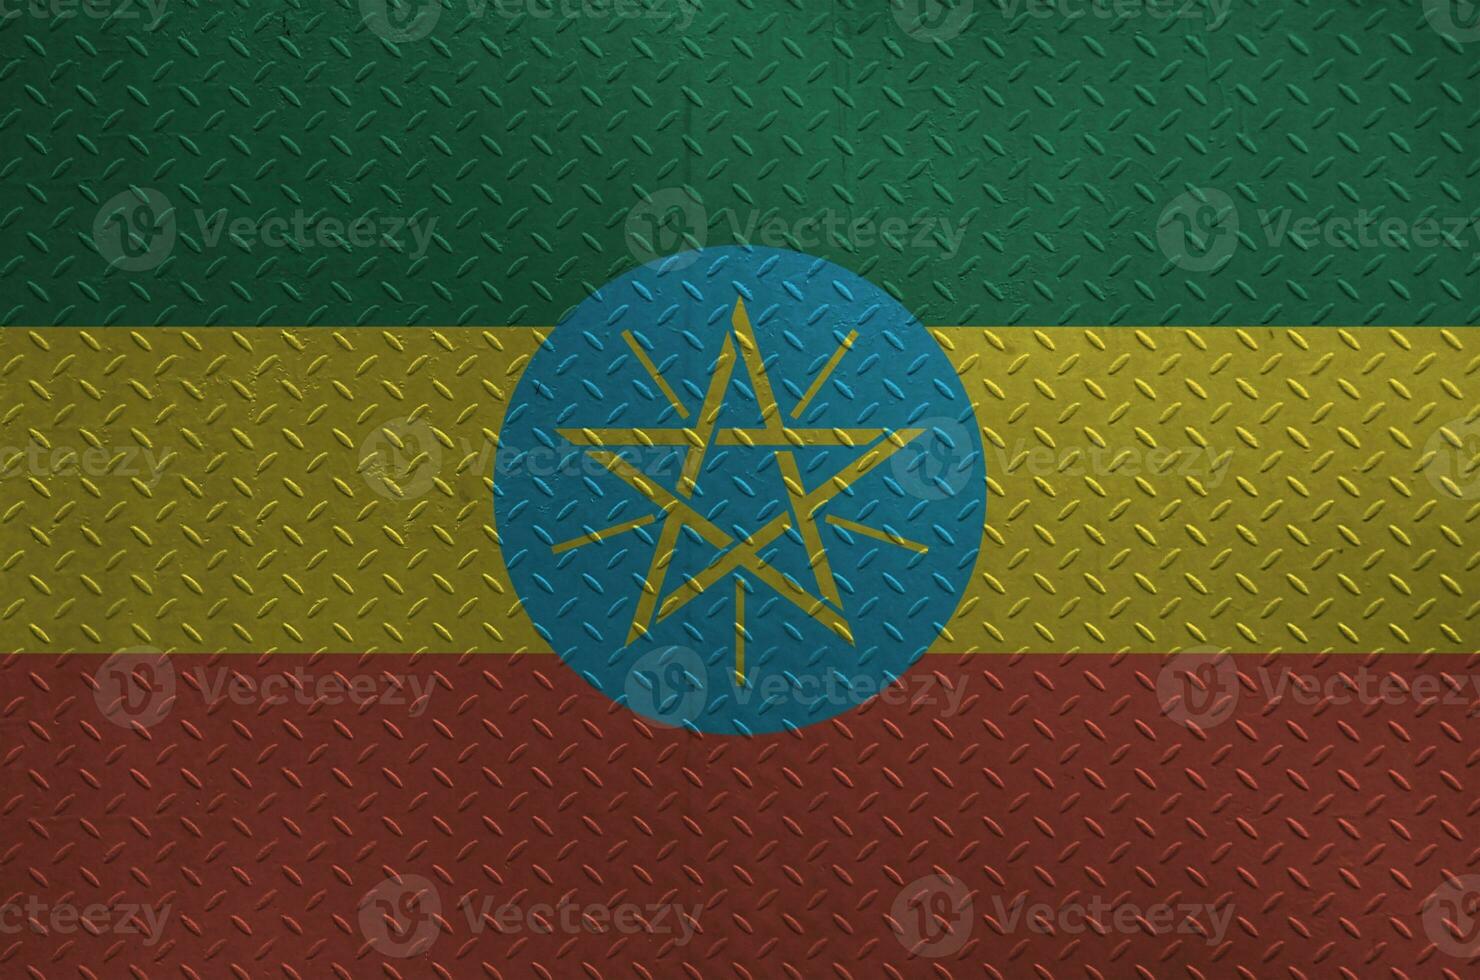 etiopien flagga avbildad i måla färger på gammal borstat metall tallrik eller vägg närbild. texturerad baner på grov bakgrund foto